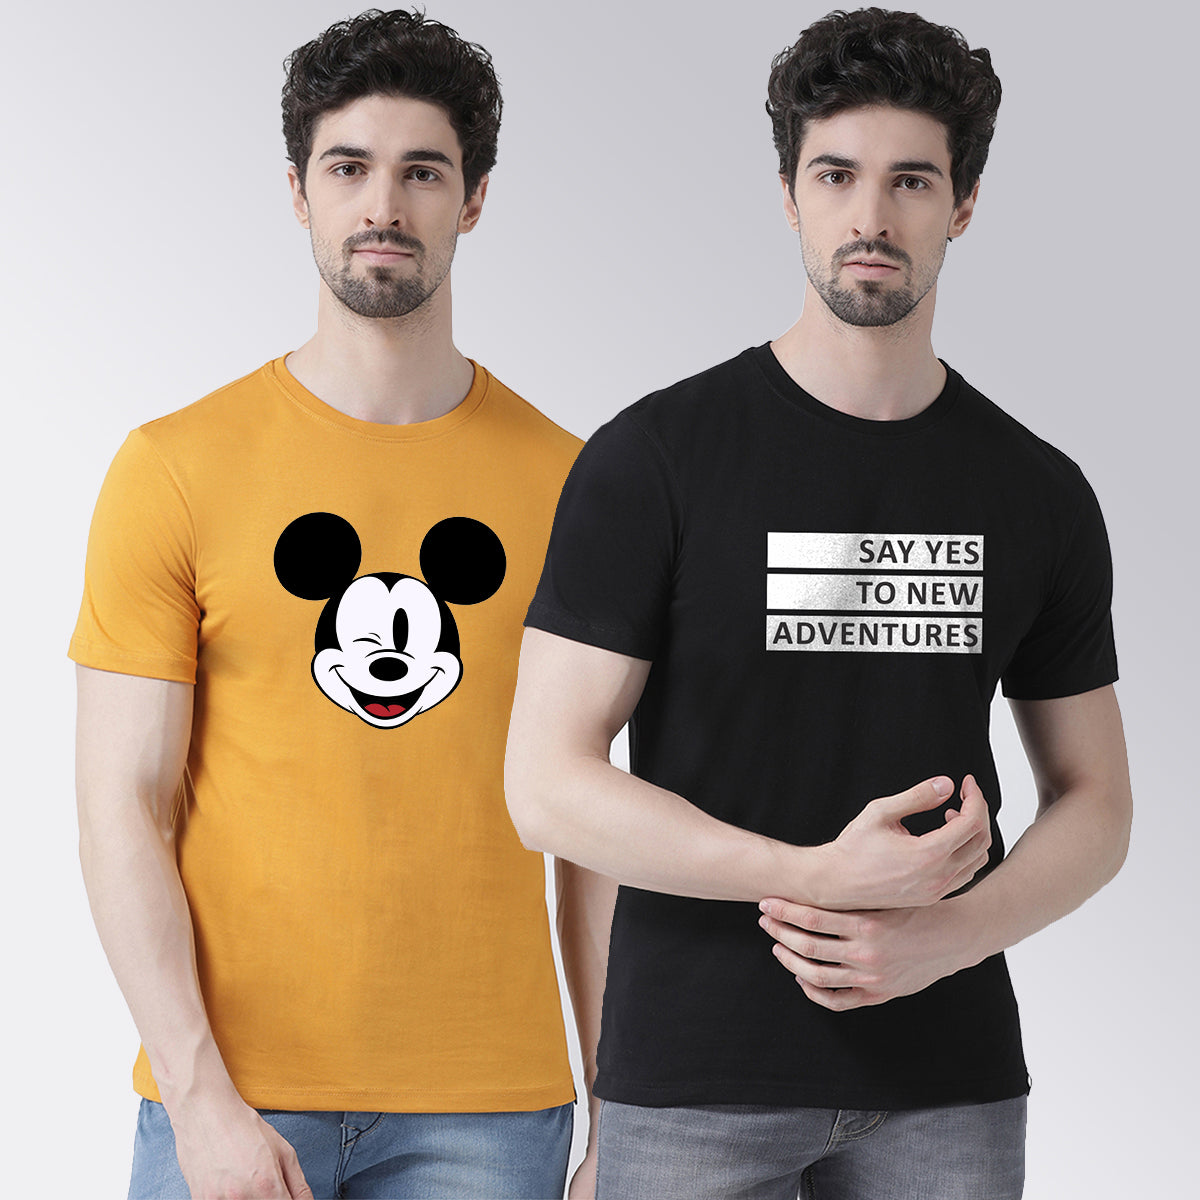 Men's Pack Of 2 Mustard & Black Printed Half Sleeves T-Shirt - Friskers